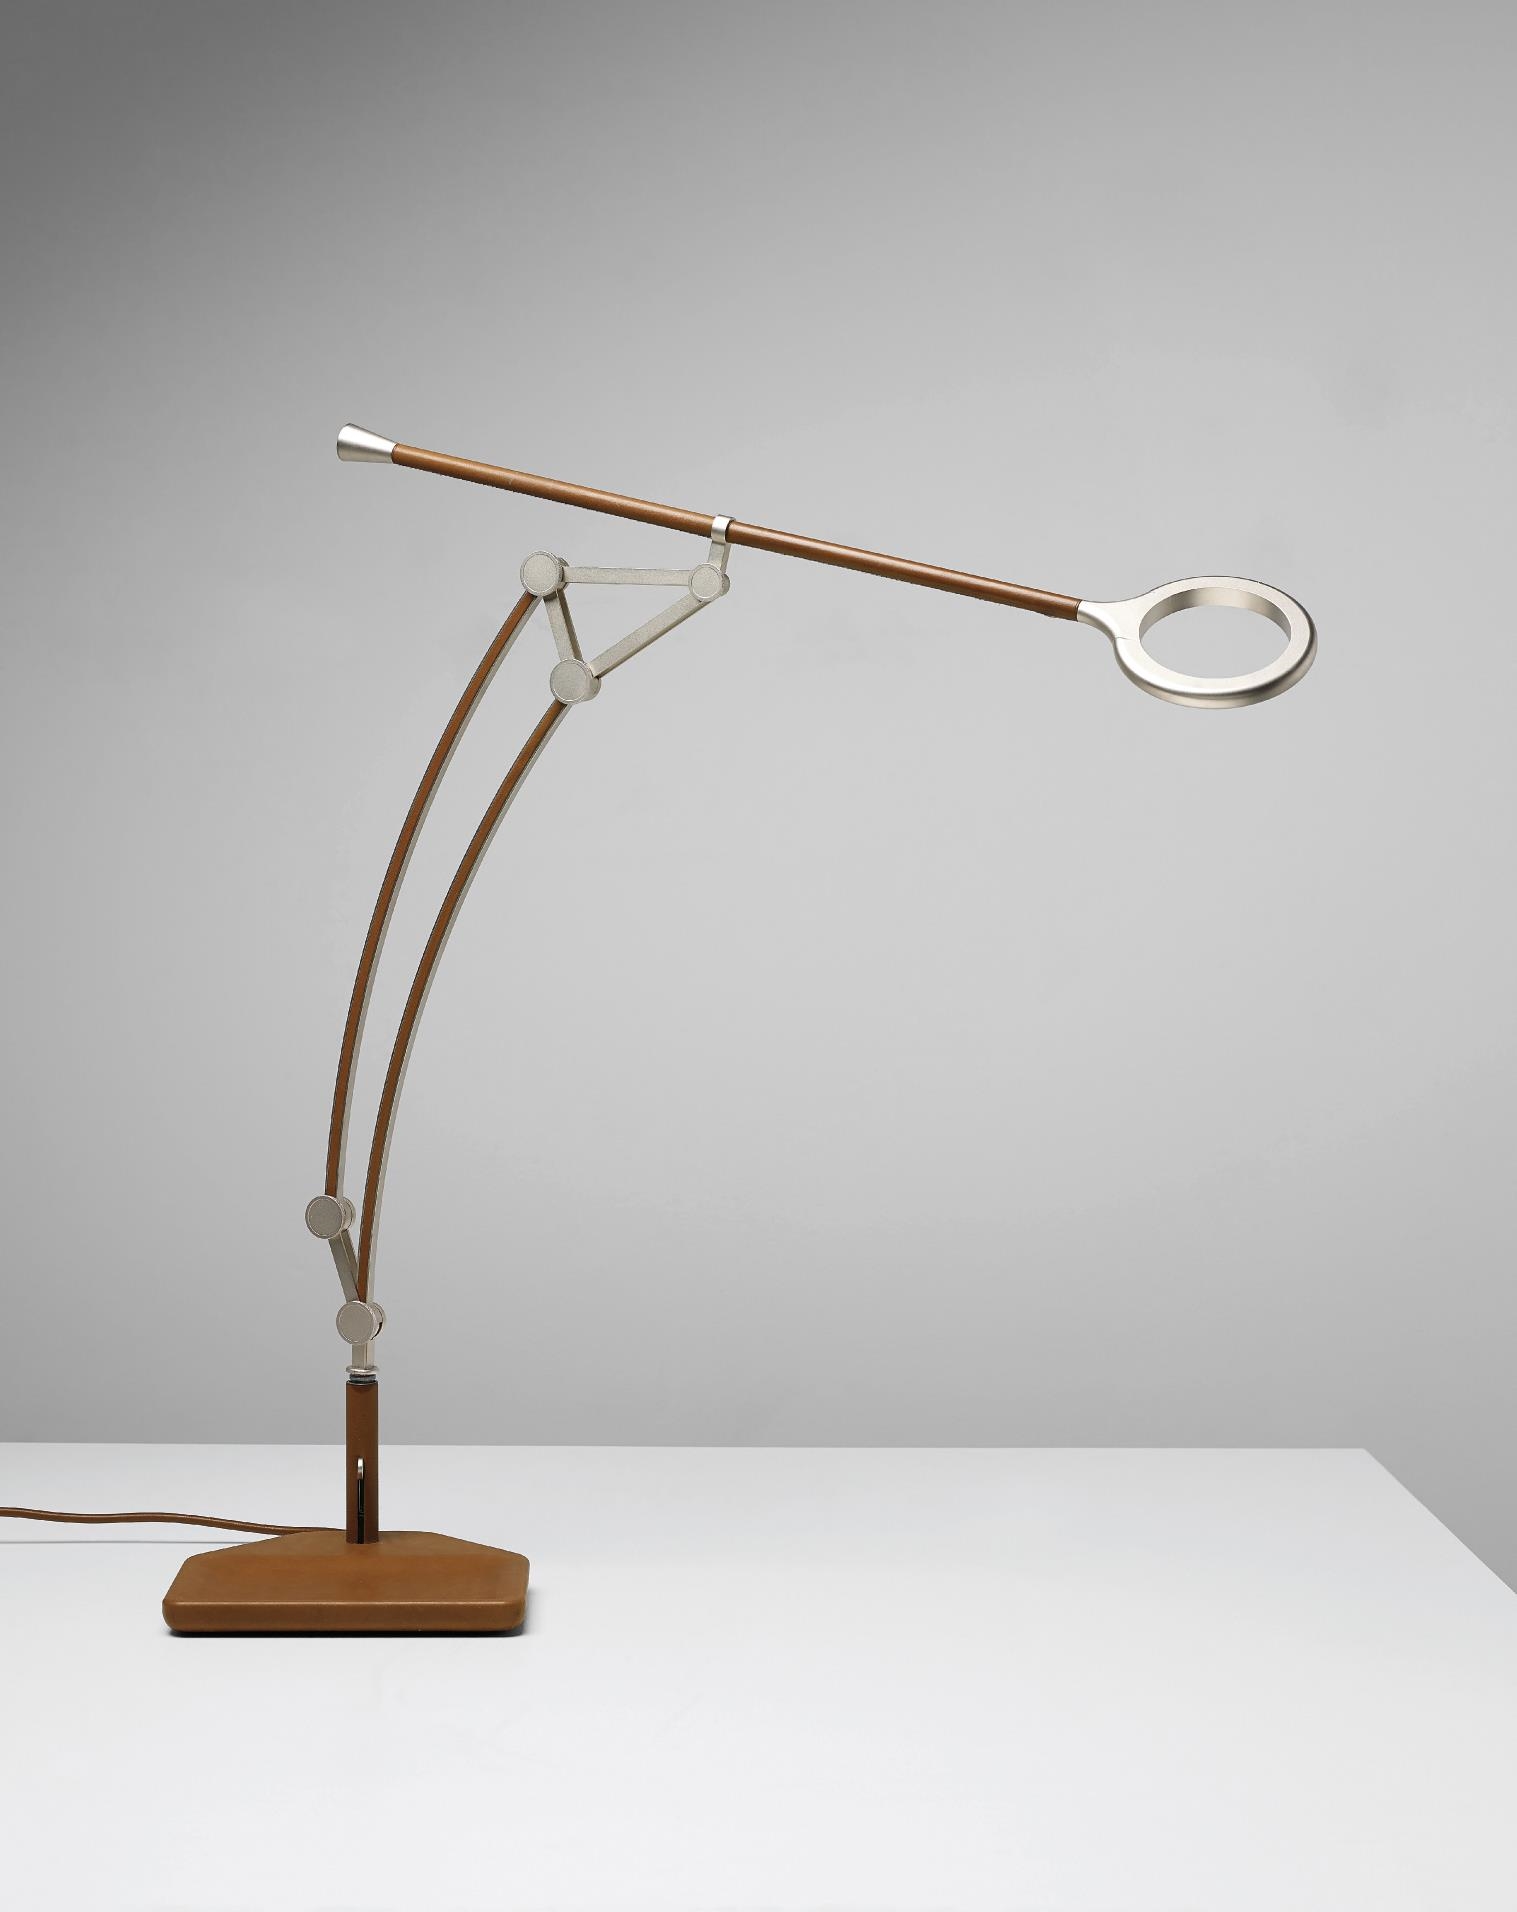 'Pantographe' desk lamp by Michele de Lucchi, 2014